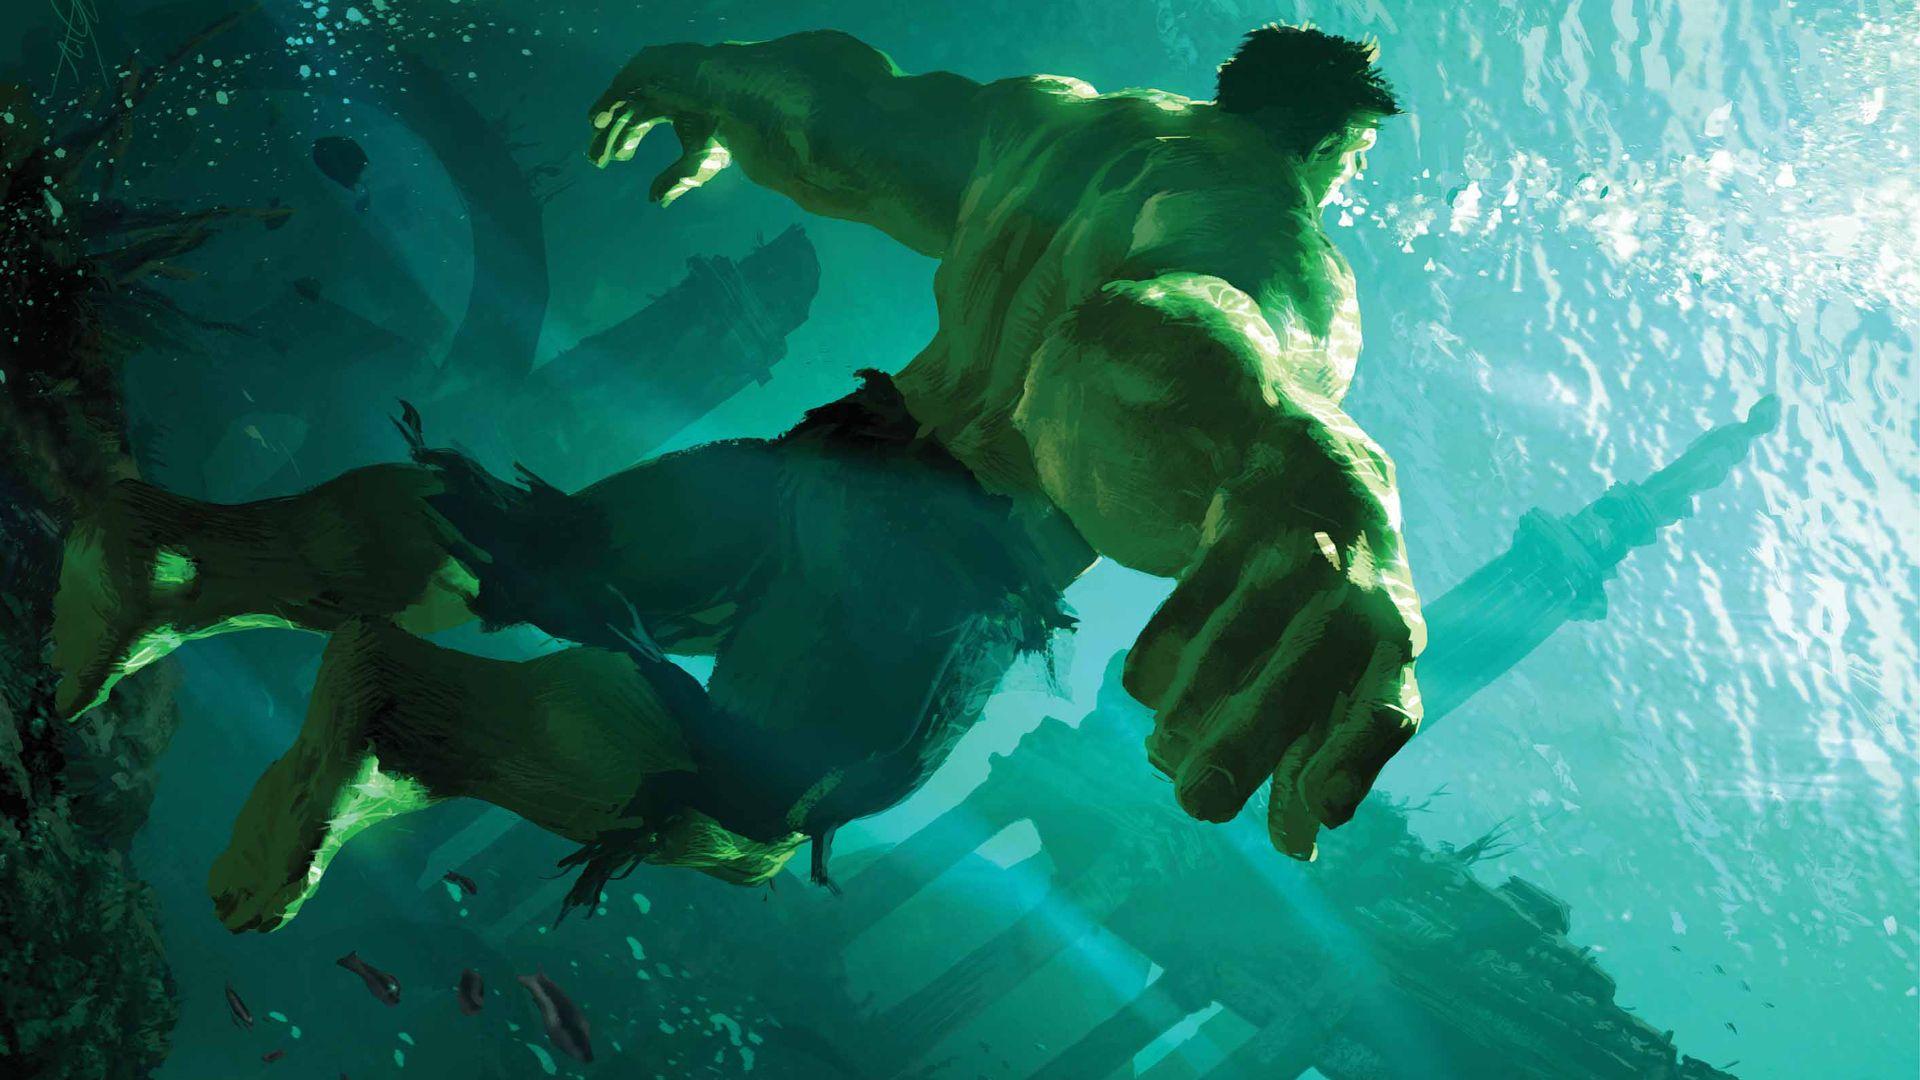 Hulk Smash Avengers Wallpaper